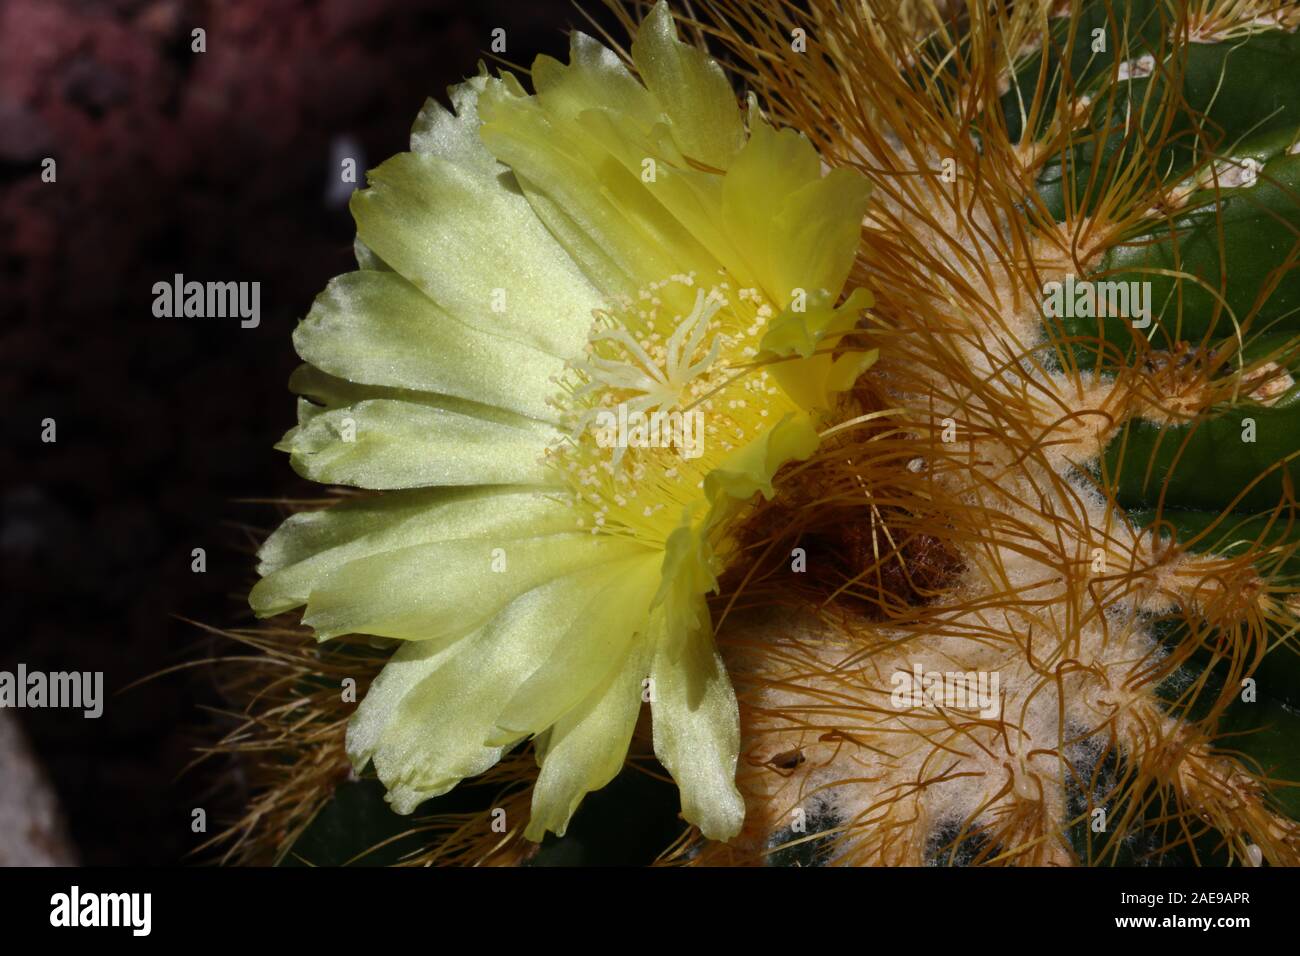 Parodia warsii è un breve cactus colonnare di solito solitario. Questa specie produce grandi fiori di colore giallo con un effetto satinato attorno alla corona dell'impianto. Foto Stock